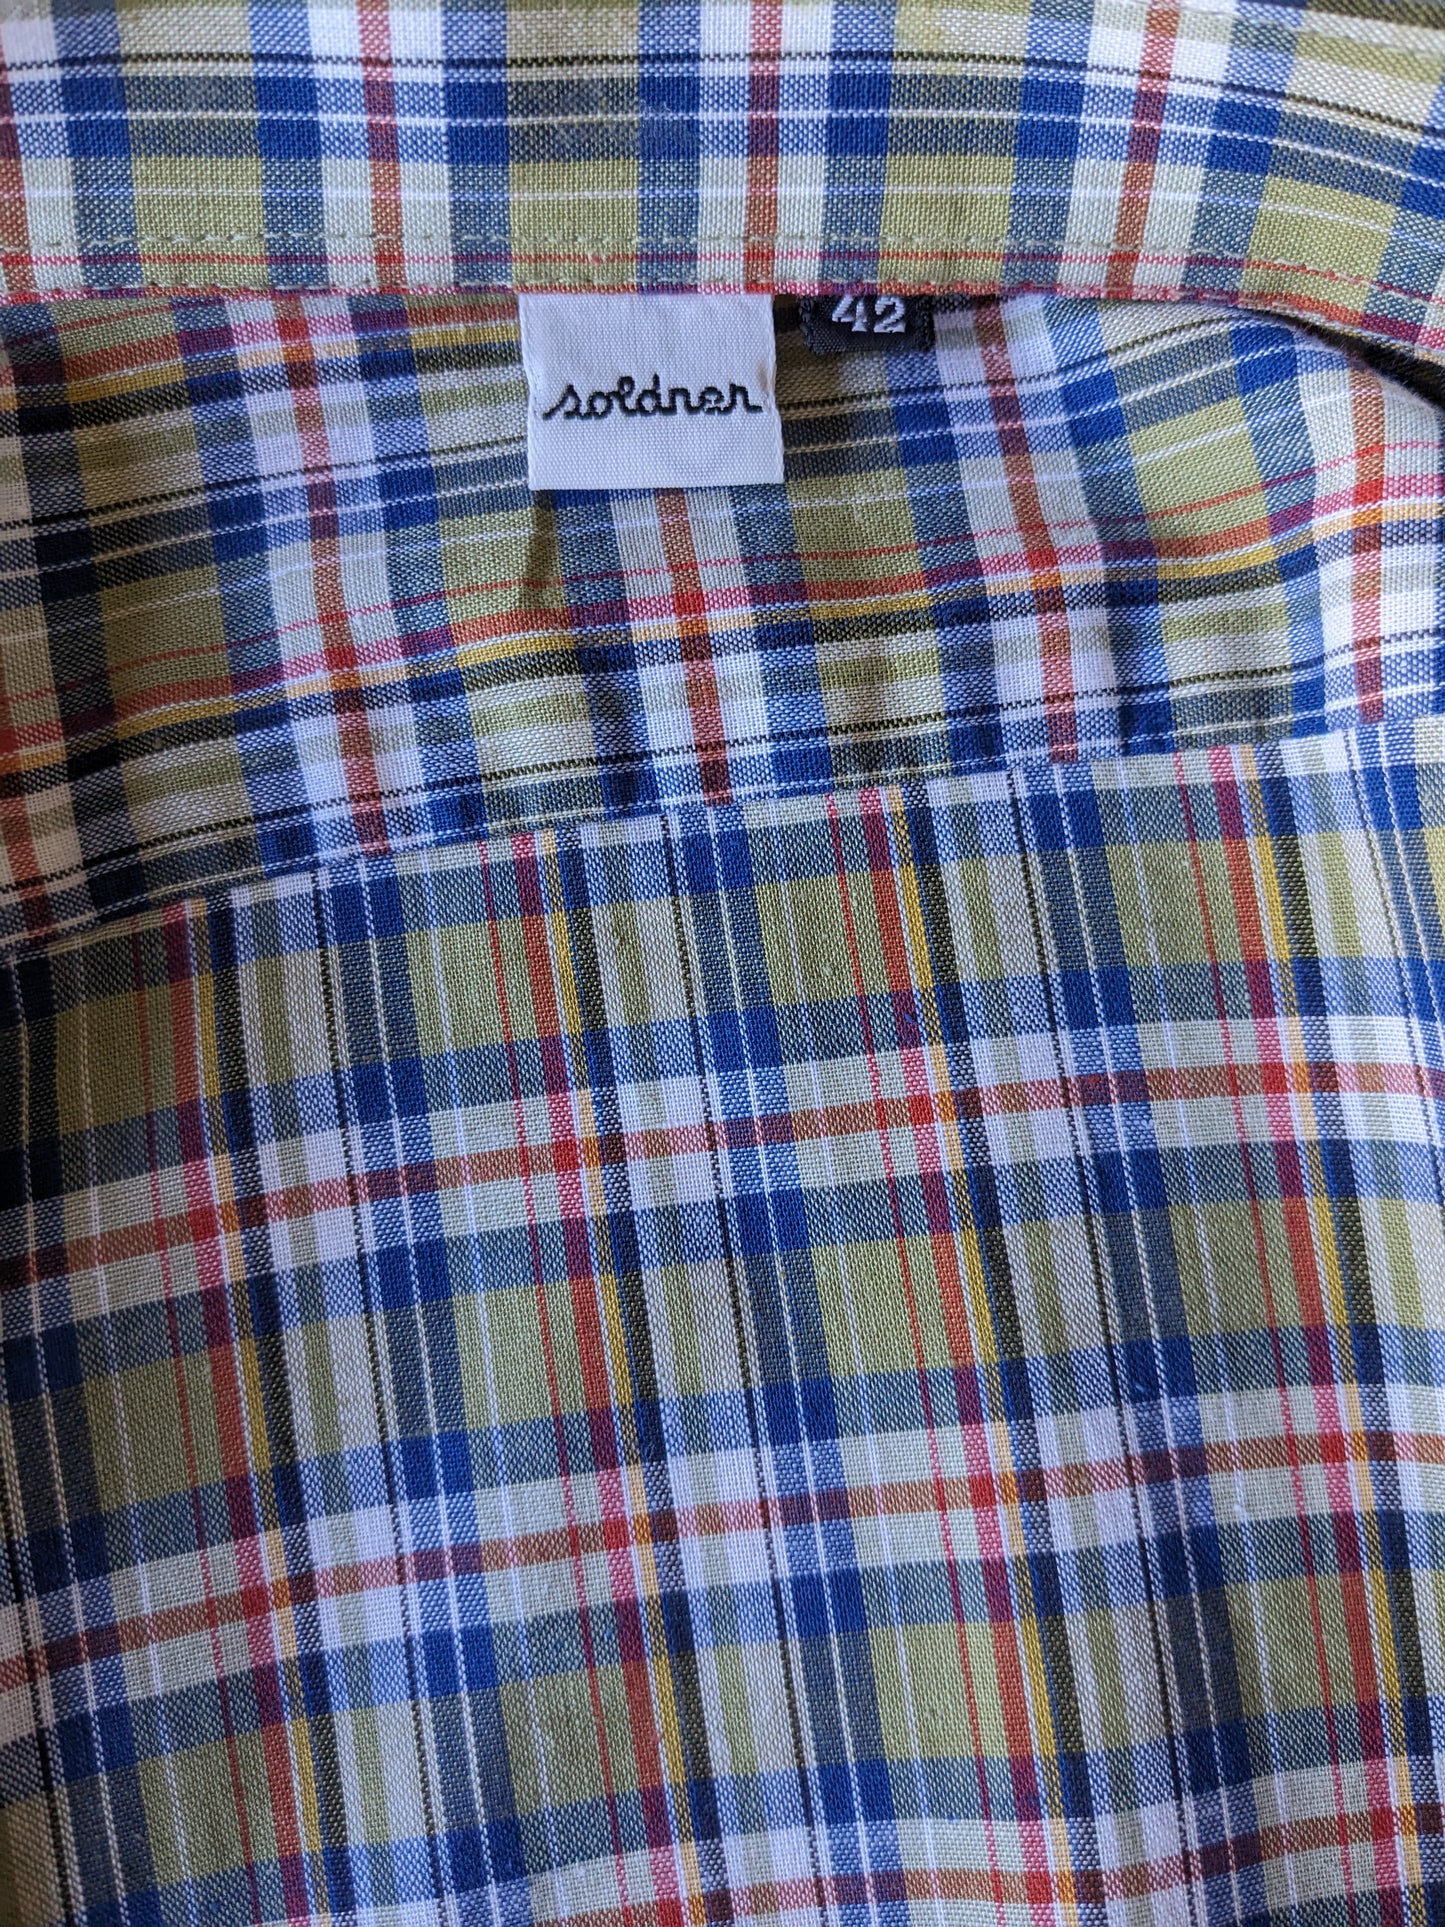 Vintage 70er Soldner -Shirt. Grünblau rot überprüft. Größe 42 / L.